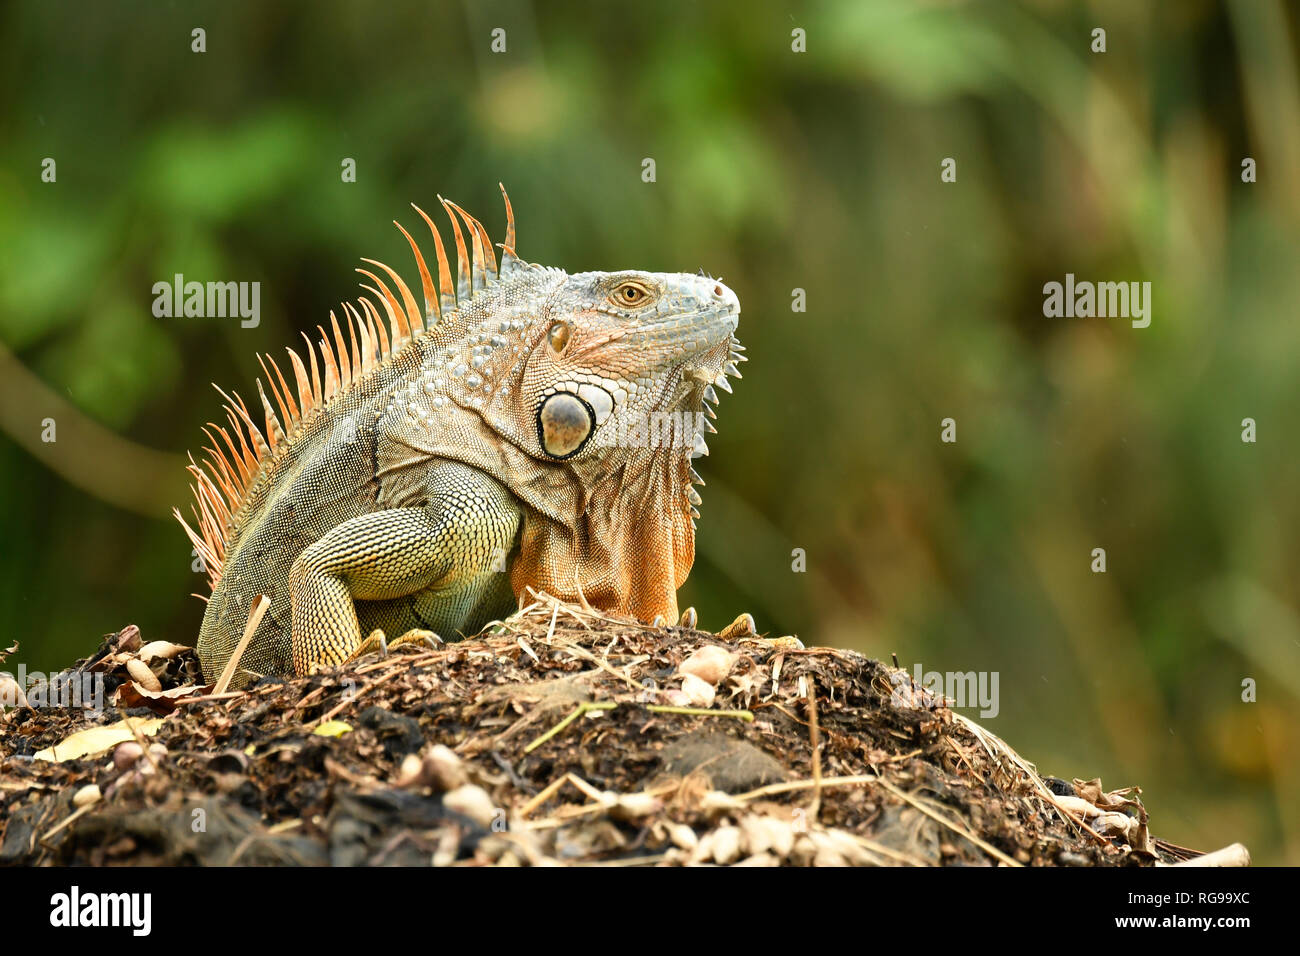 Comune o verde (Iguana Iguana iguana) maschio adulto nella riproduzione dei colori, Turrialba, Costa Rica, Ottobre Foto Stock